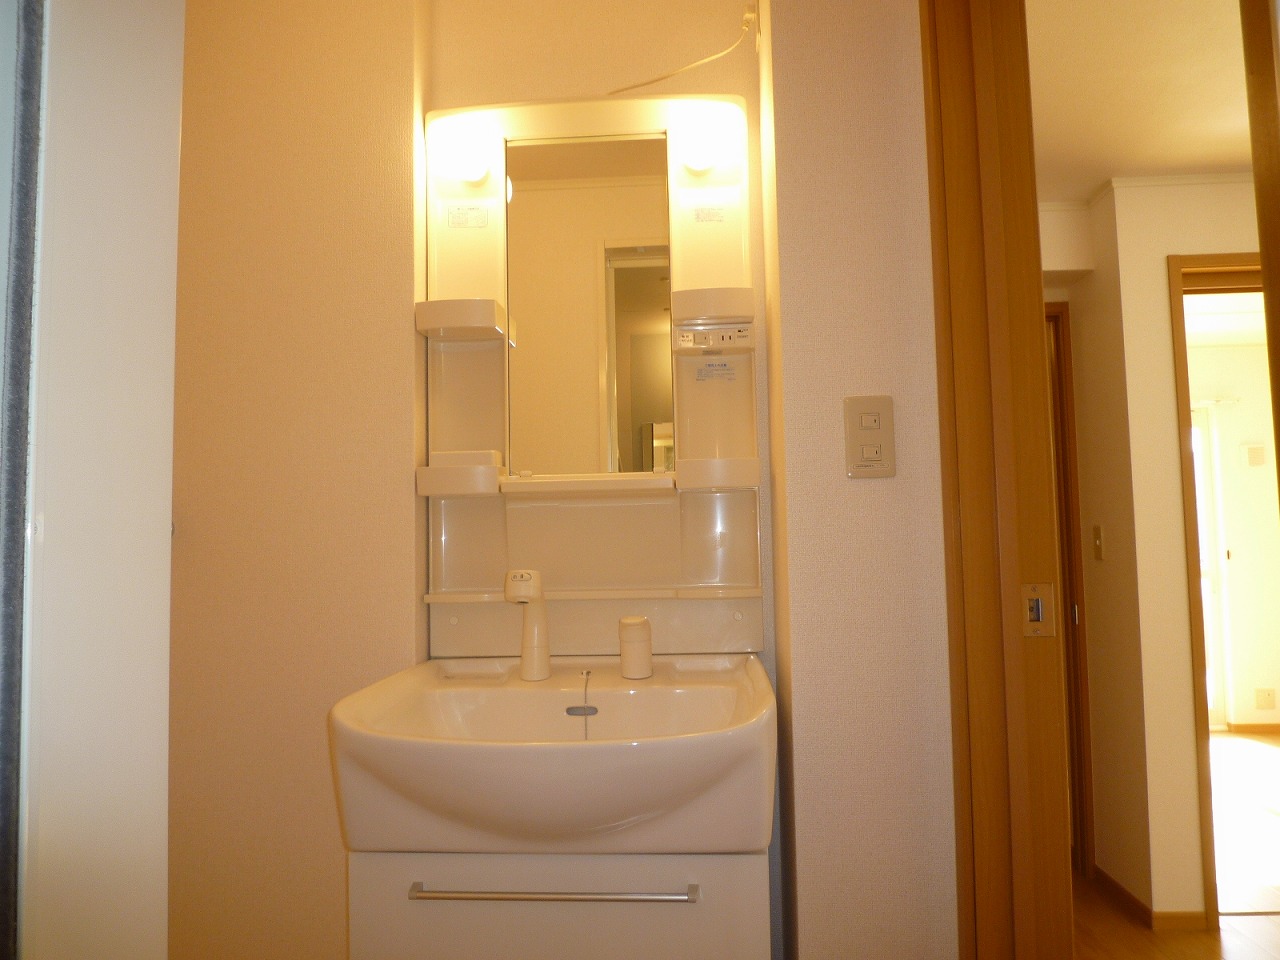 Washroom. The same type of room (Room 101)